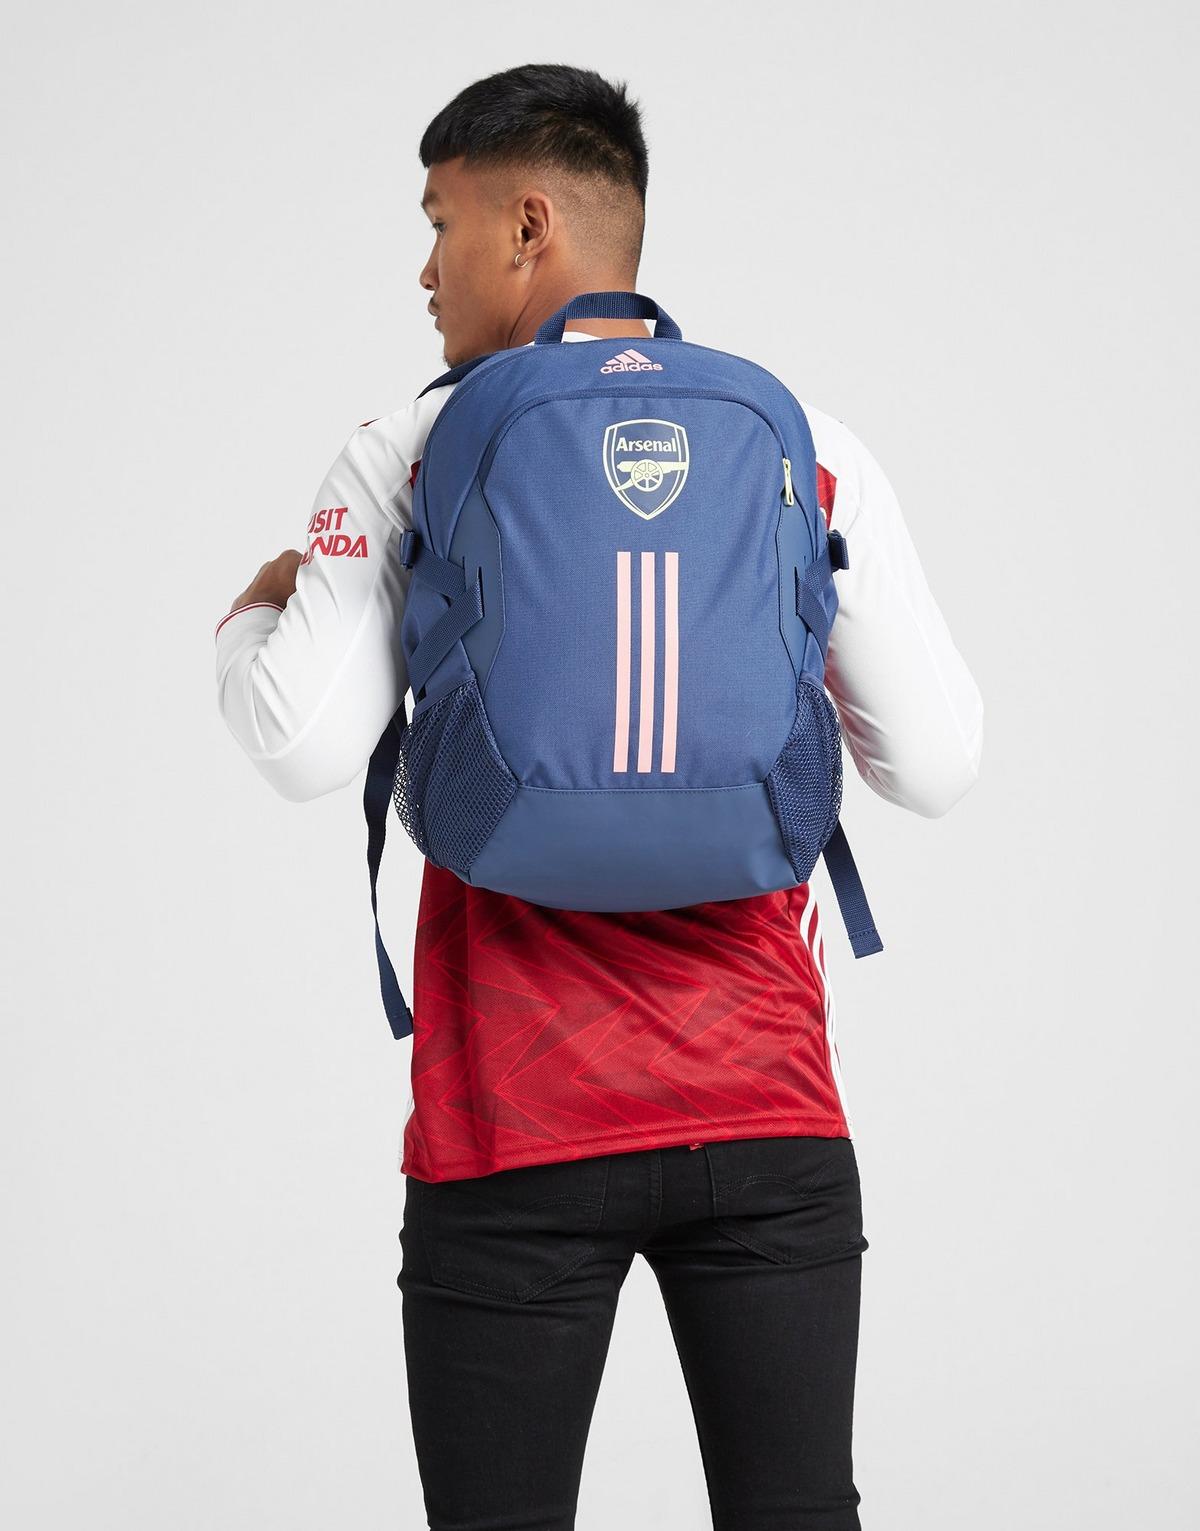 adidas arsenal backpack